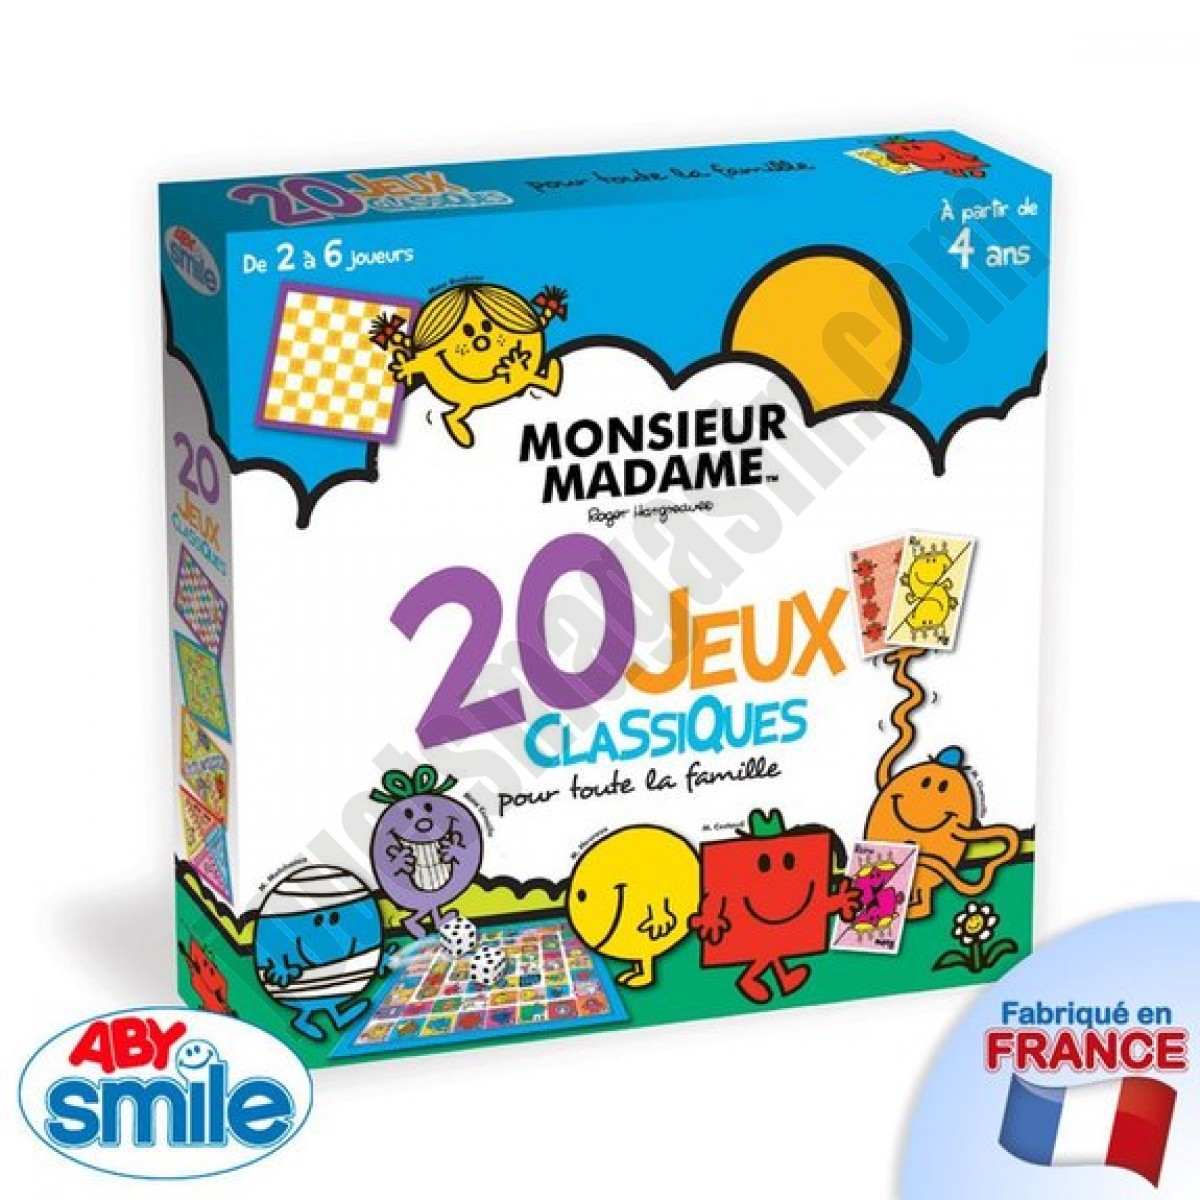 20 jeux classiques Monsieur Madame En promotion - 20 jeux classiques Monsieur Madame En promotion